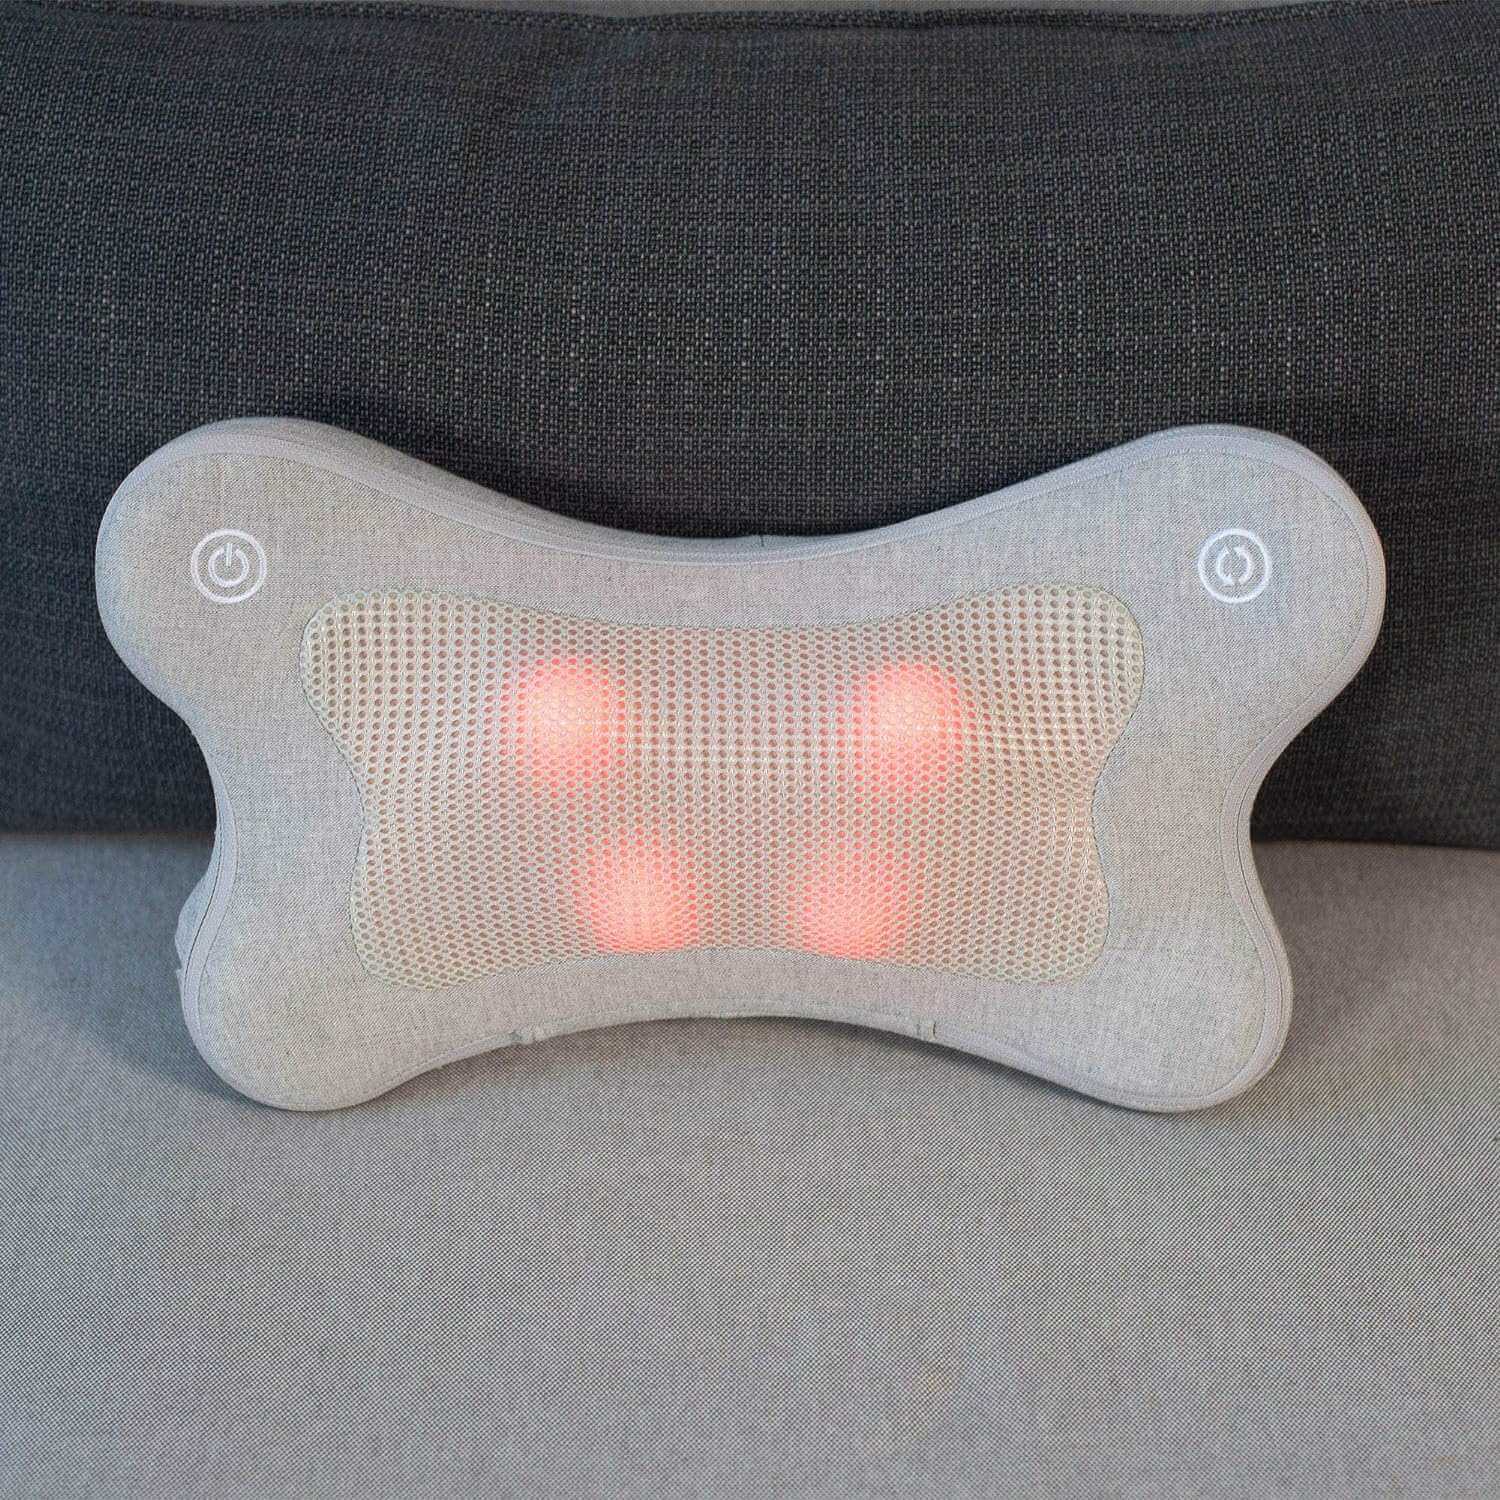 Synca Wellness iPuffy - Premium 3D Heated Lumbar Massager - Electric Massagers